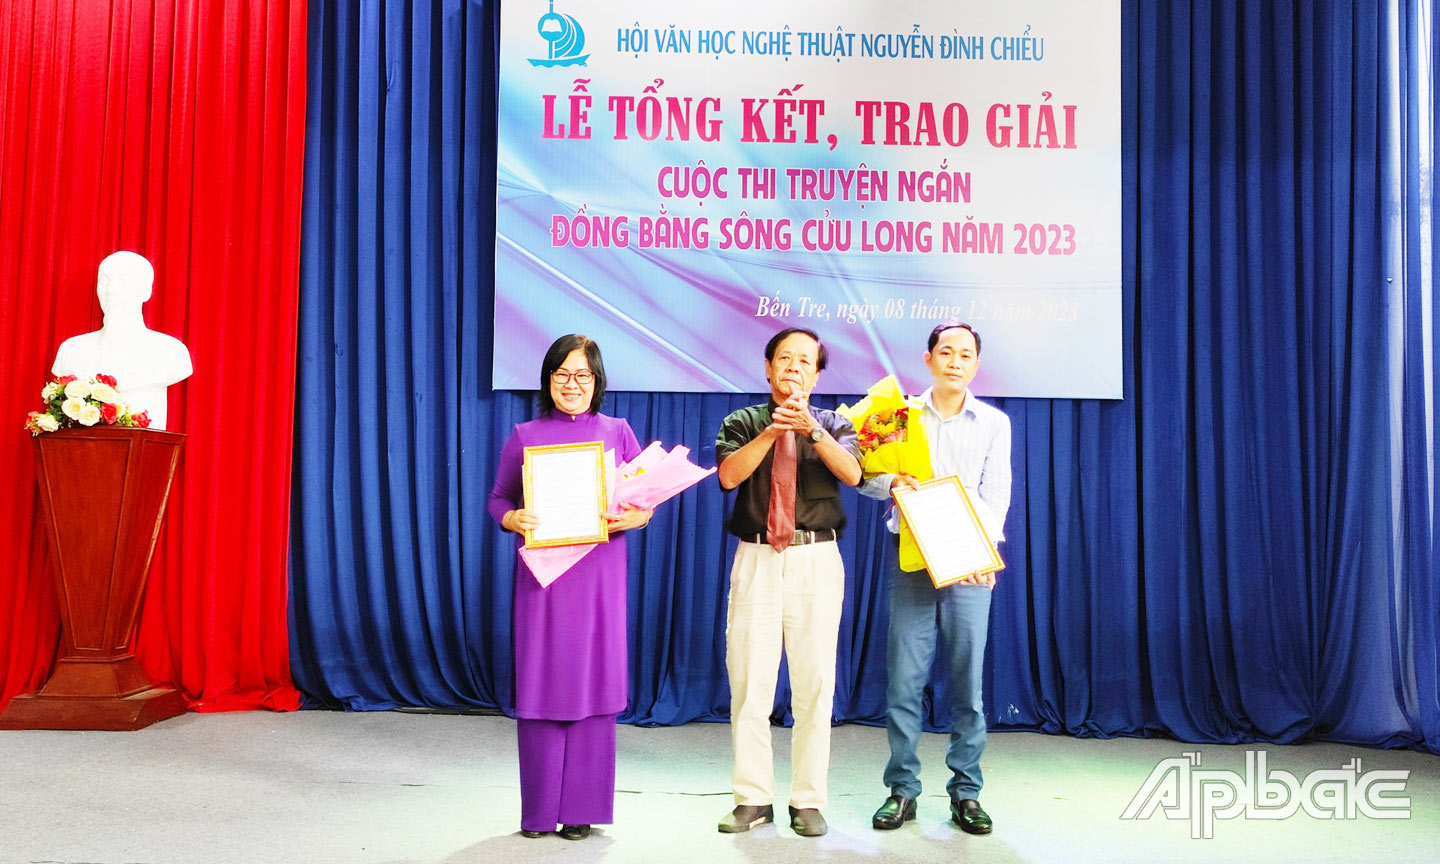 Tác giả Ngọc Lệ (bìa trái) trong ngày nhận giải thưởng truyện ngắn Đồng bằng sông Cửu Long  năm 2023.